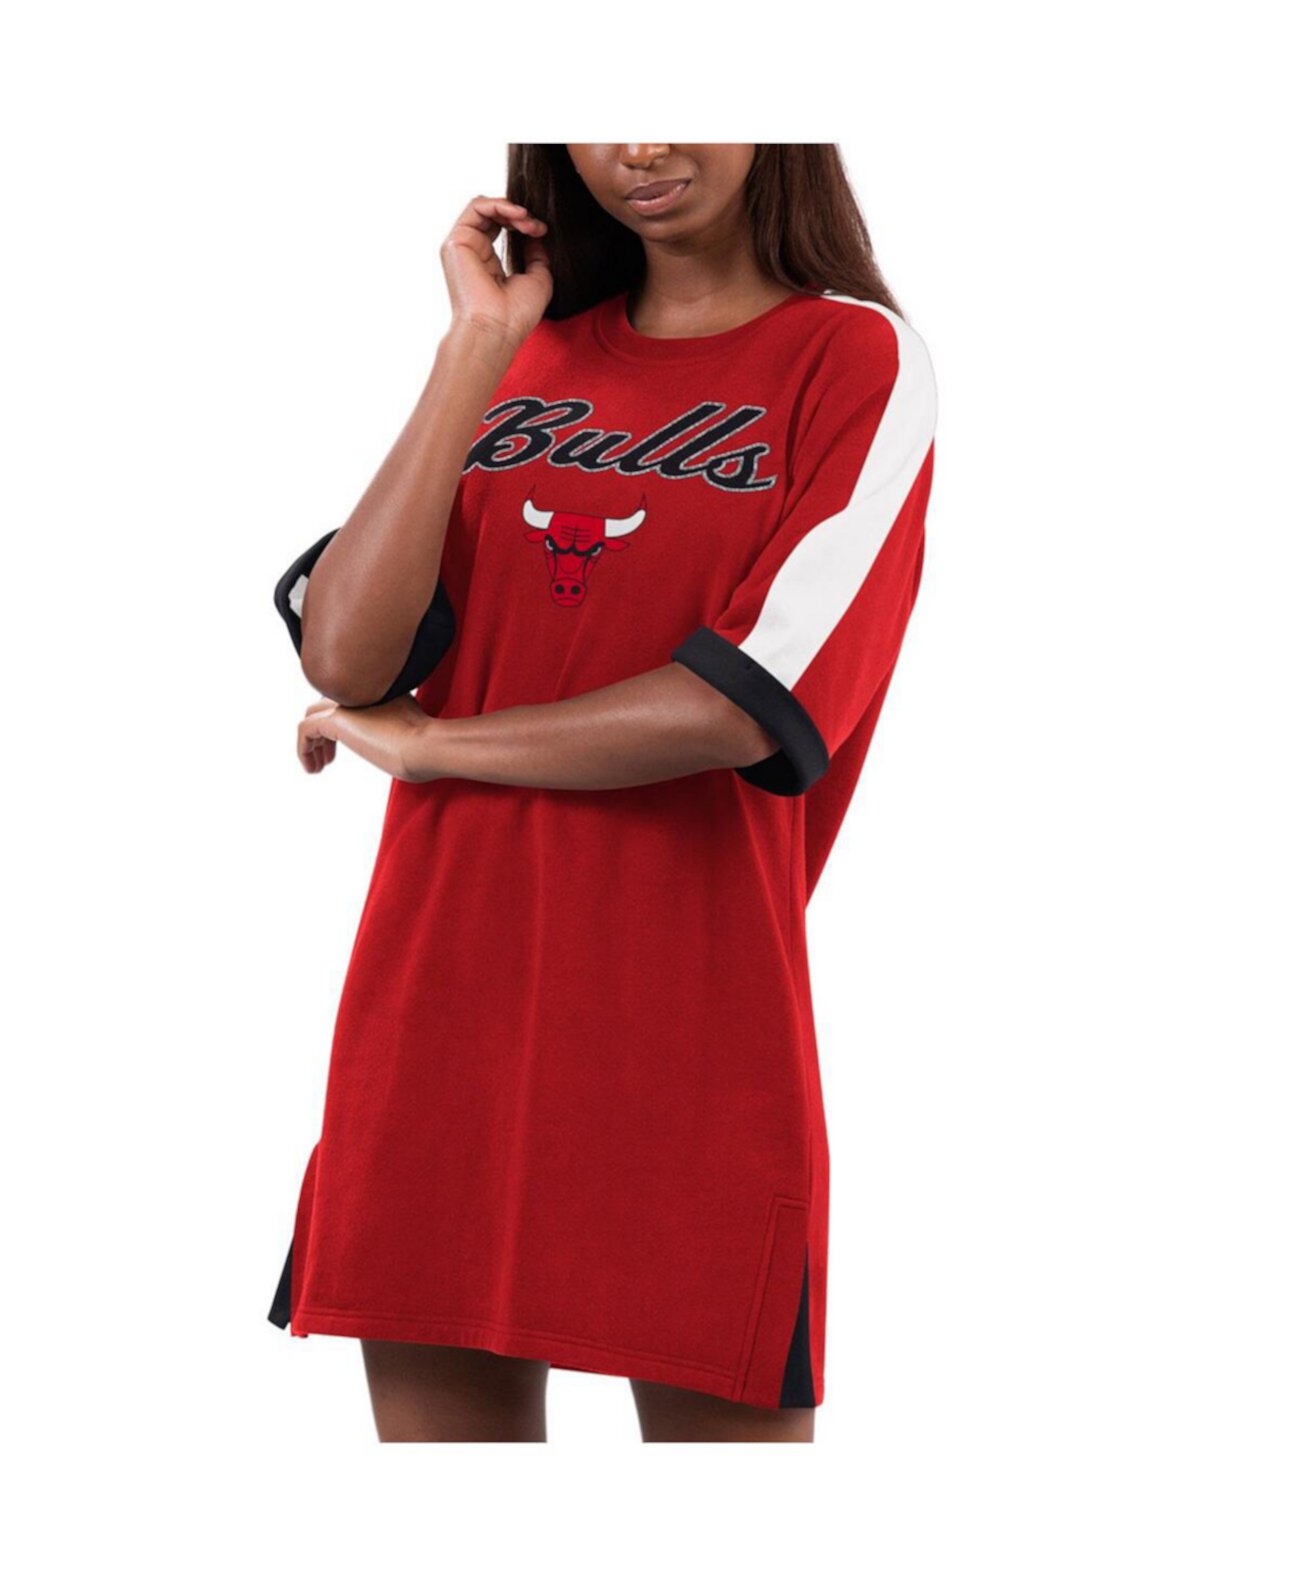 Женское красное платье-кроссовки с флагом Chicago Bulls G-III